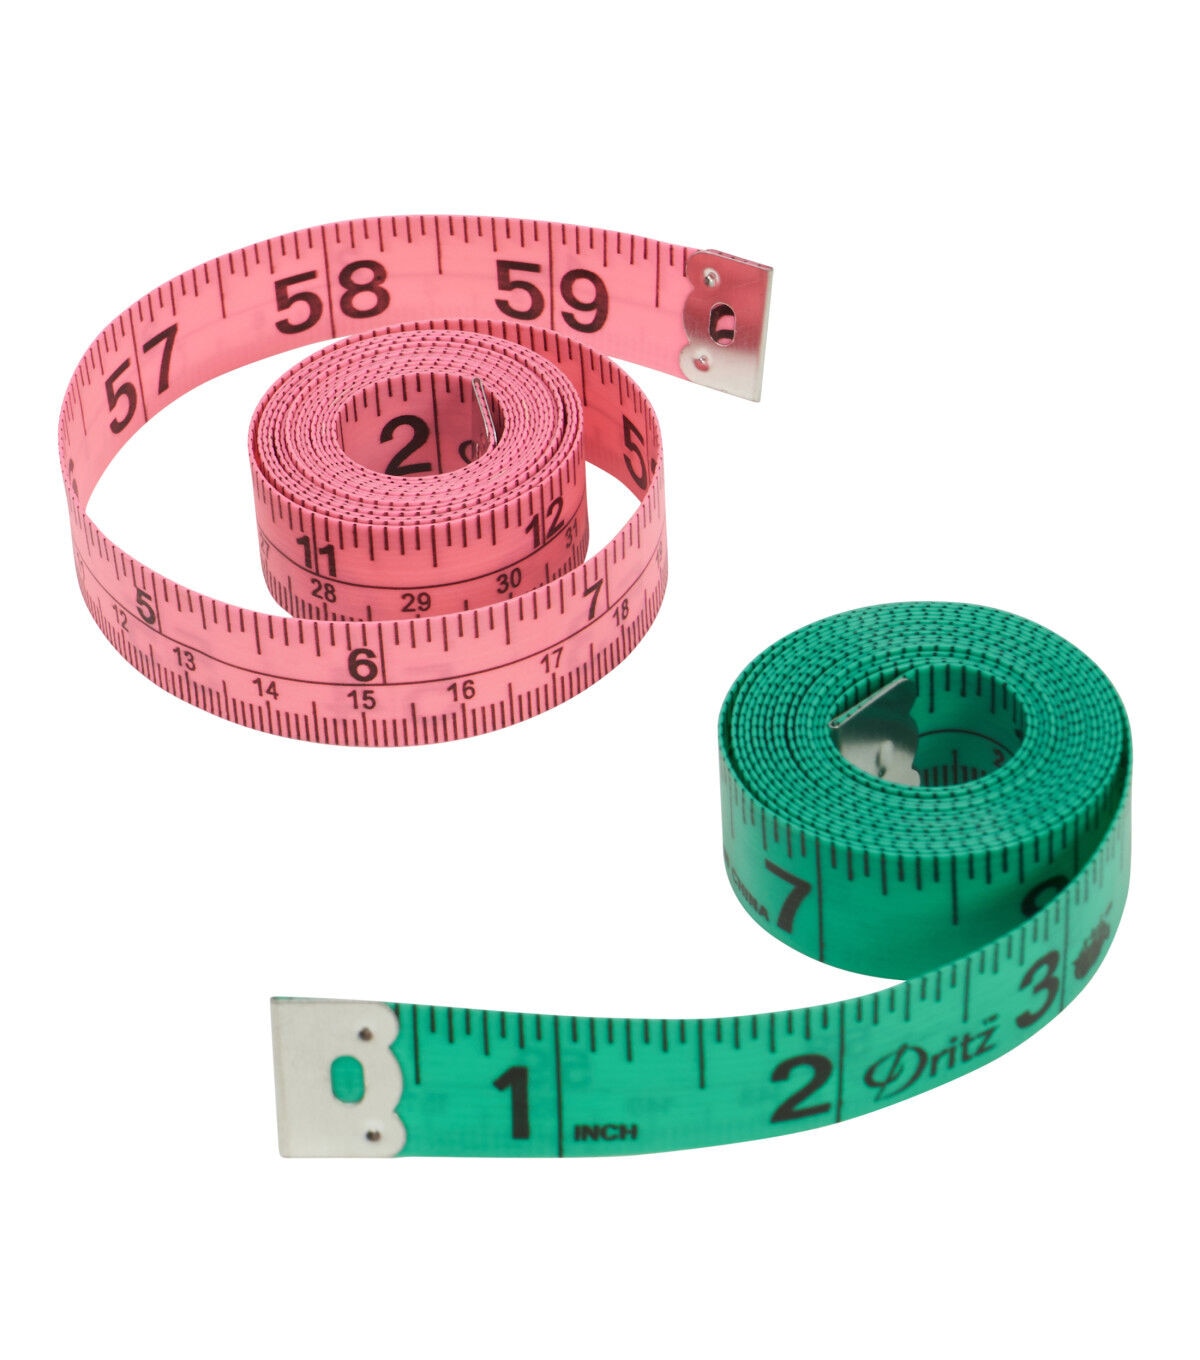 Dritz Fashion Color Tape Measure - 60 in.